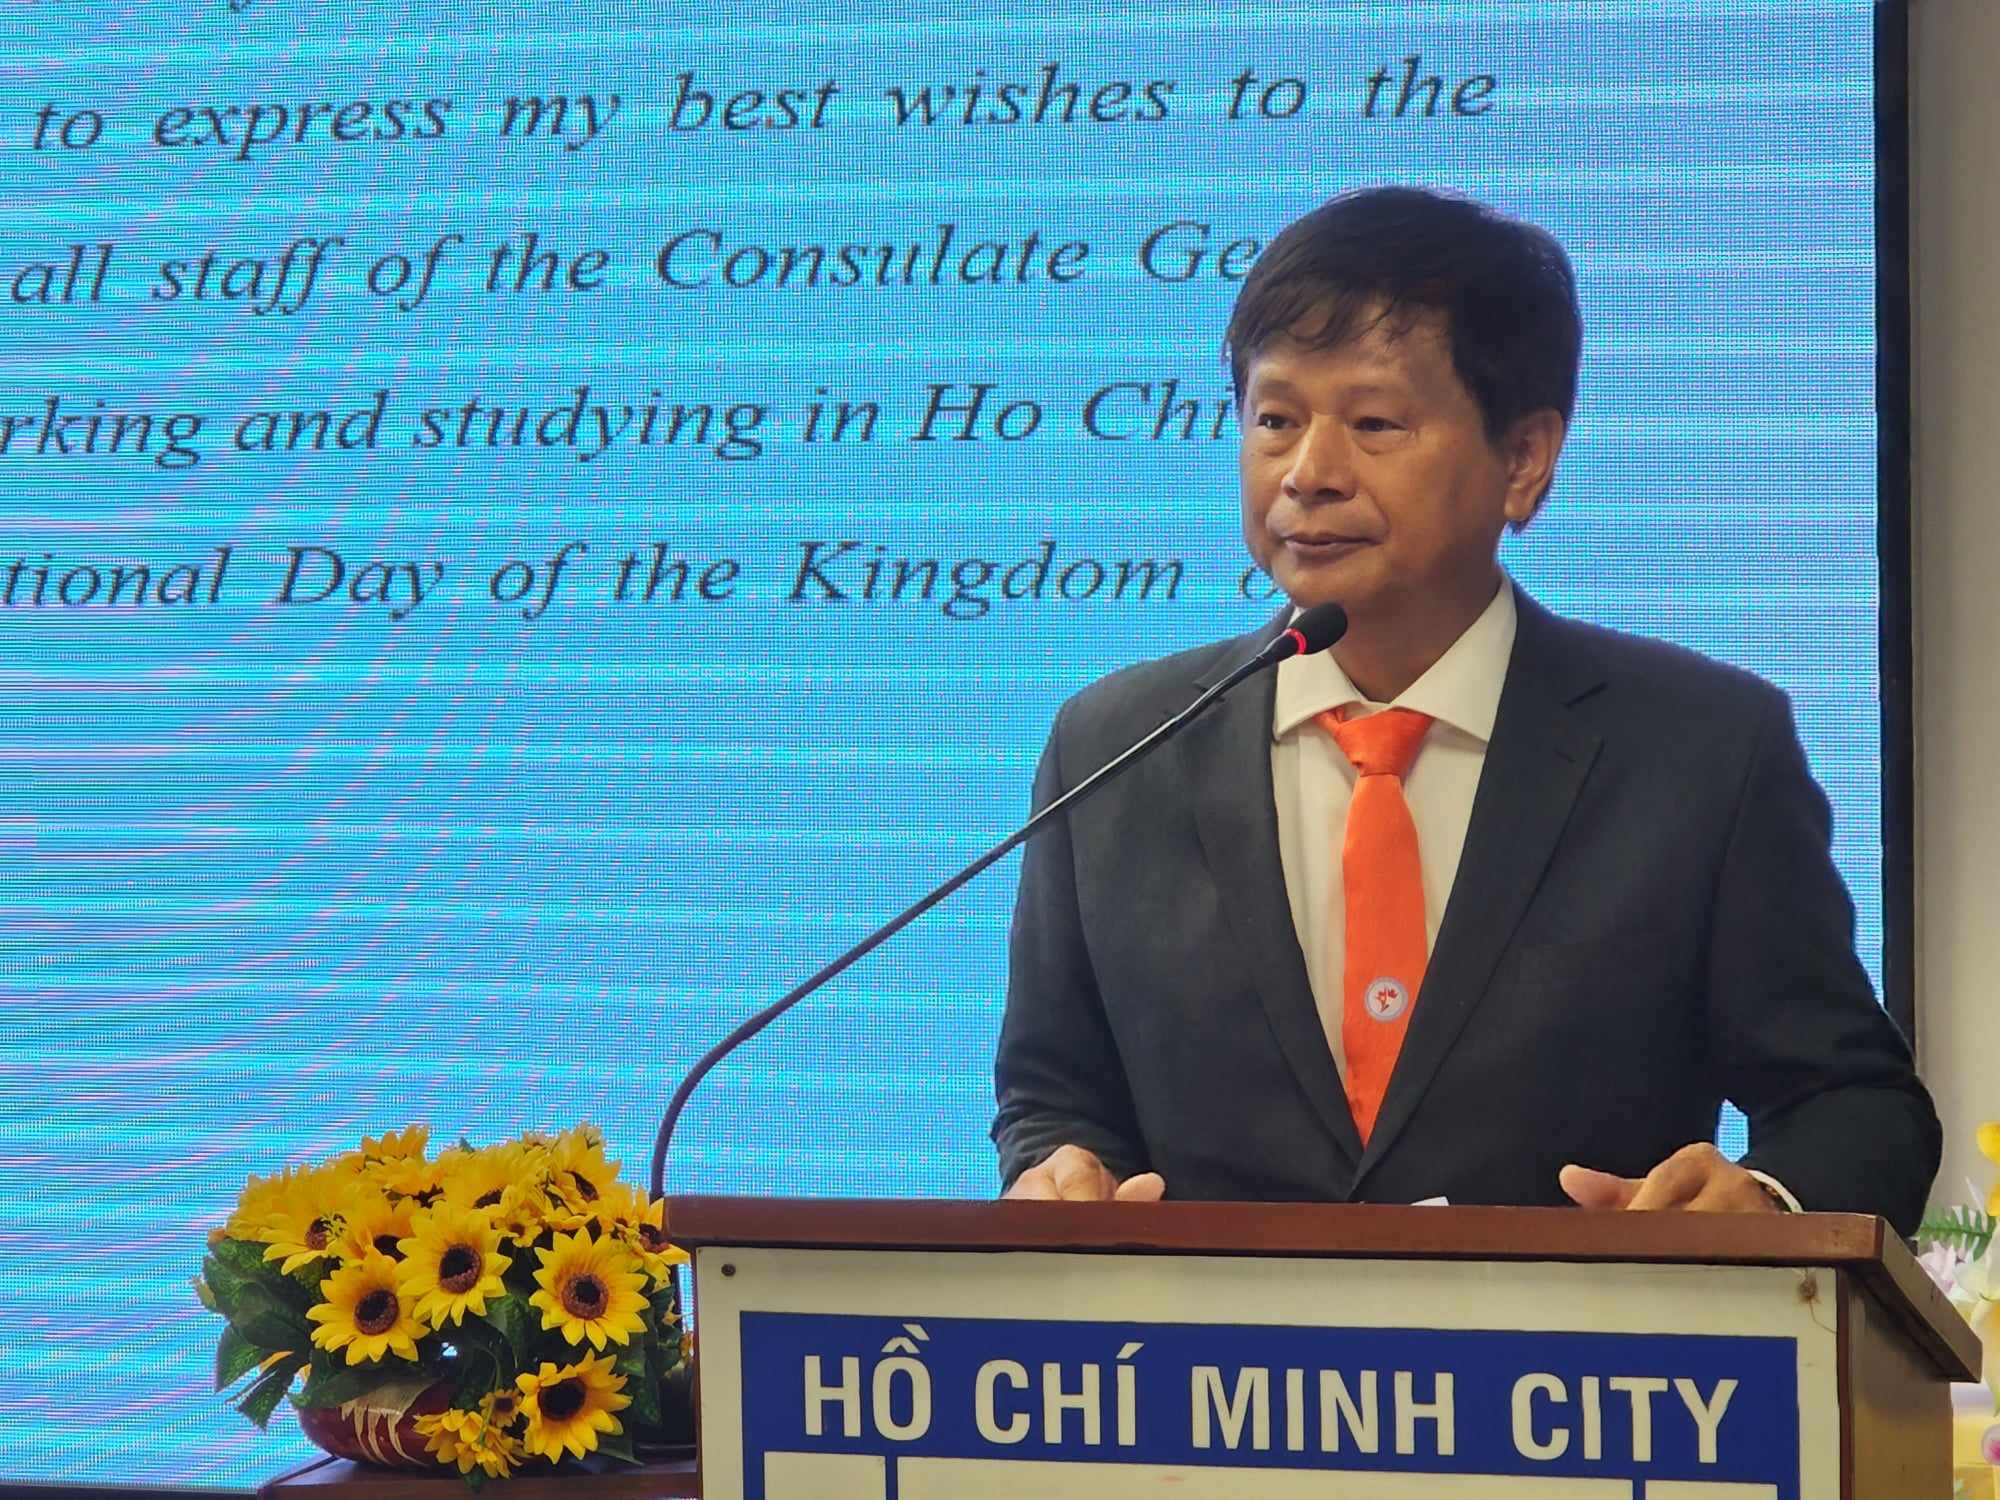 Ông Trần Trọng Dũng - Phó Chủ tịch Hội nhà báo Việt Nam, Chủ tịch Hội hữu nghị Việt Nam - Hà Lan TPHCM - phát biểu tại cuộc họp mặt